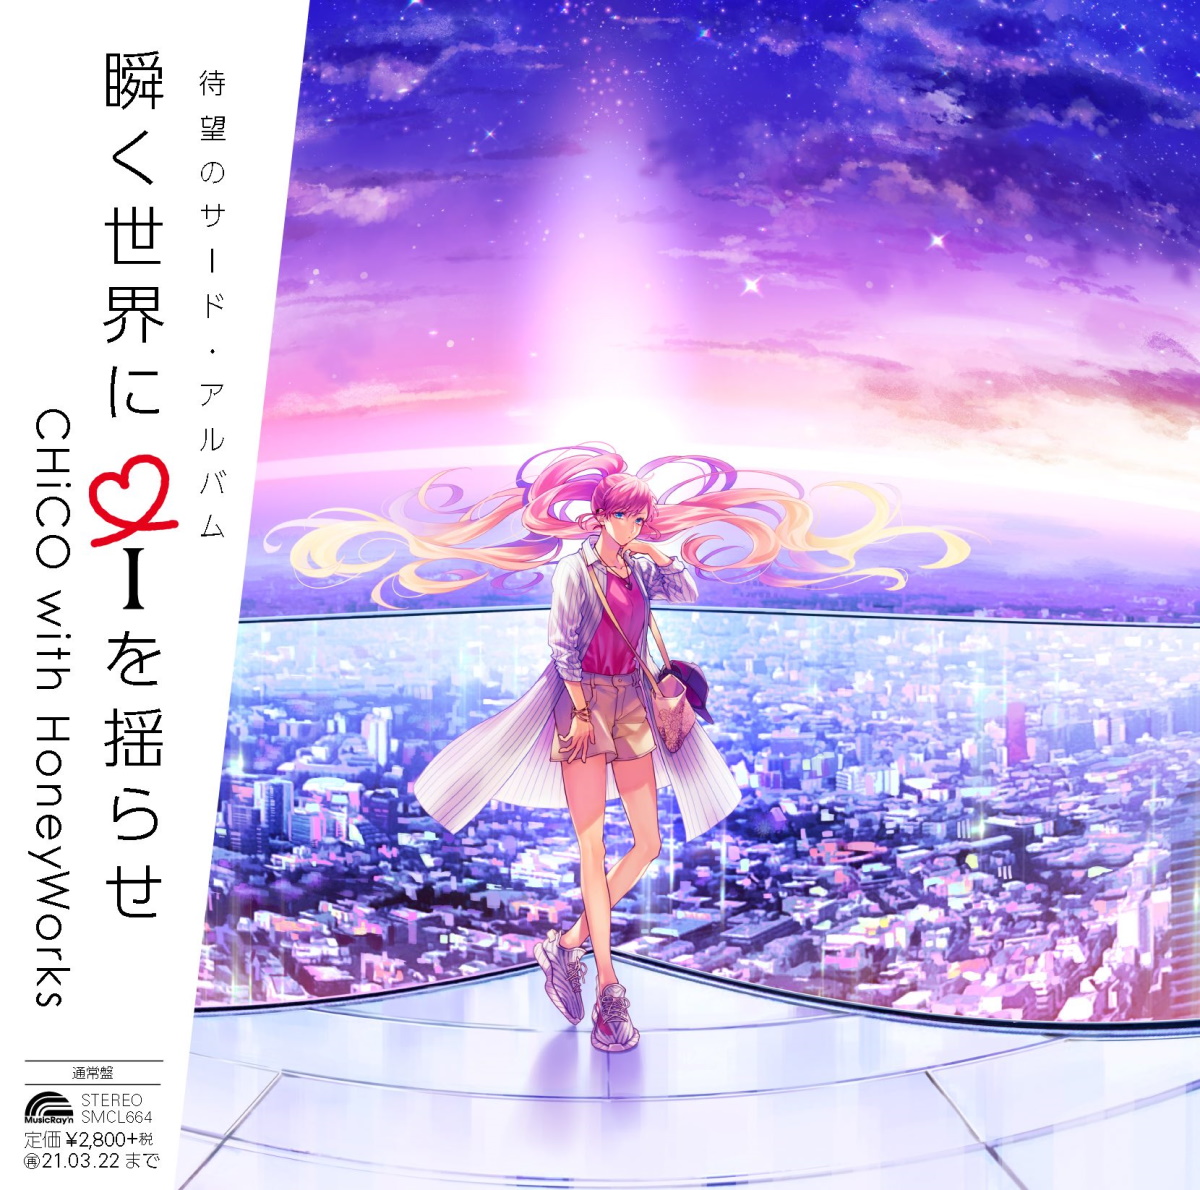 Cover for『CHiCO with HoneyWorks - Heroine Ikusei Keikaku』from the release『Matataku Sekai ni i wo Yurase』